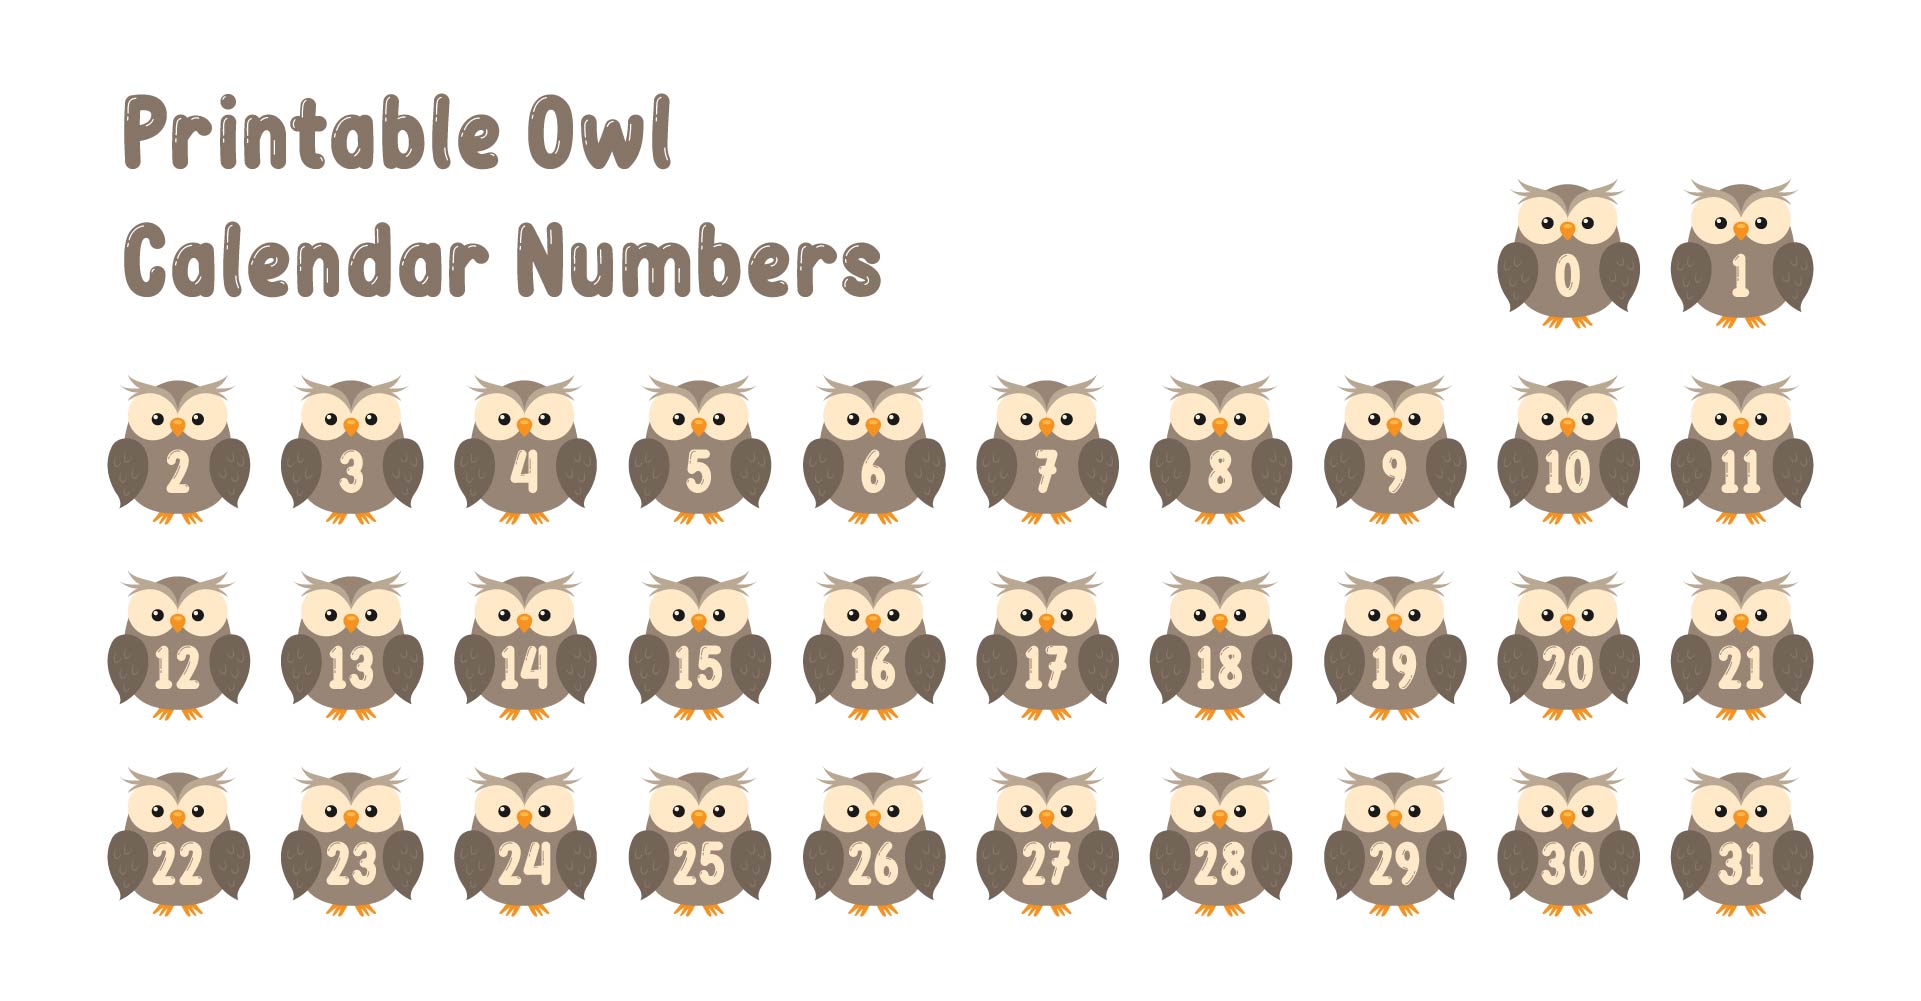 Printable Owl Calendar Numbers